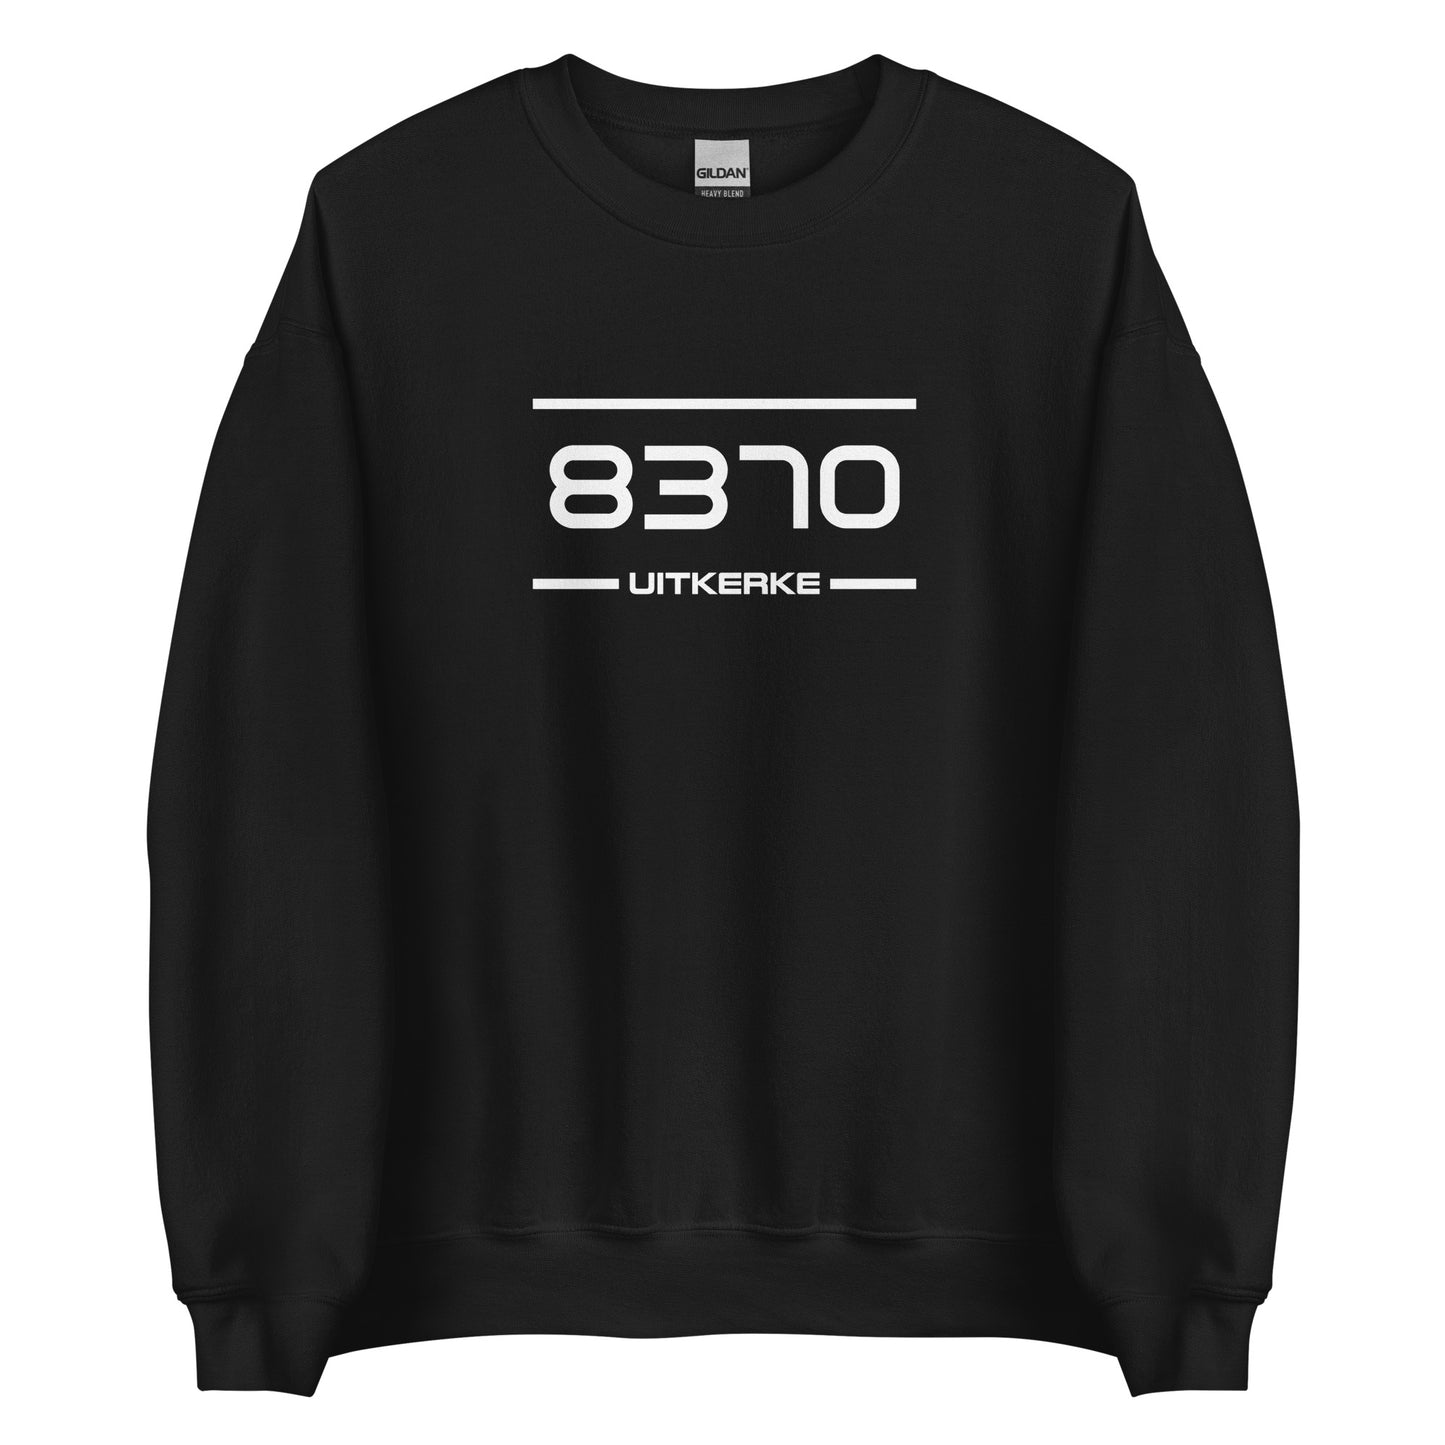 Sweater - 8370 - Uitkerke (M/V)